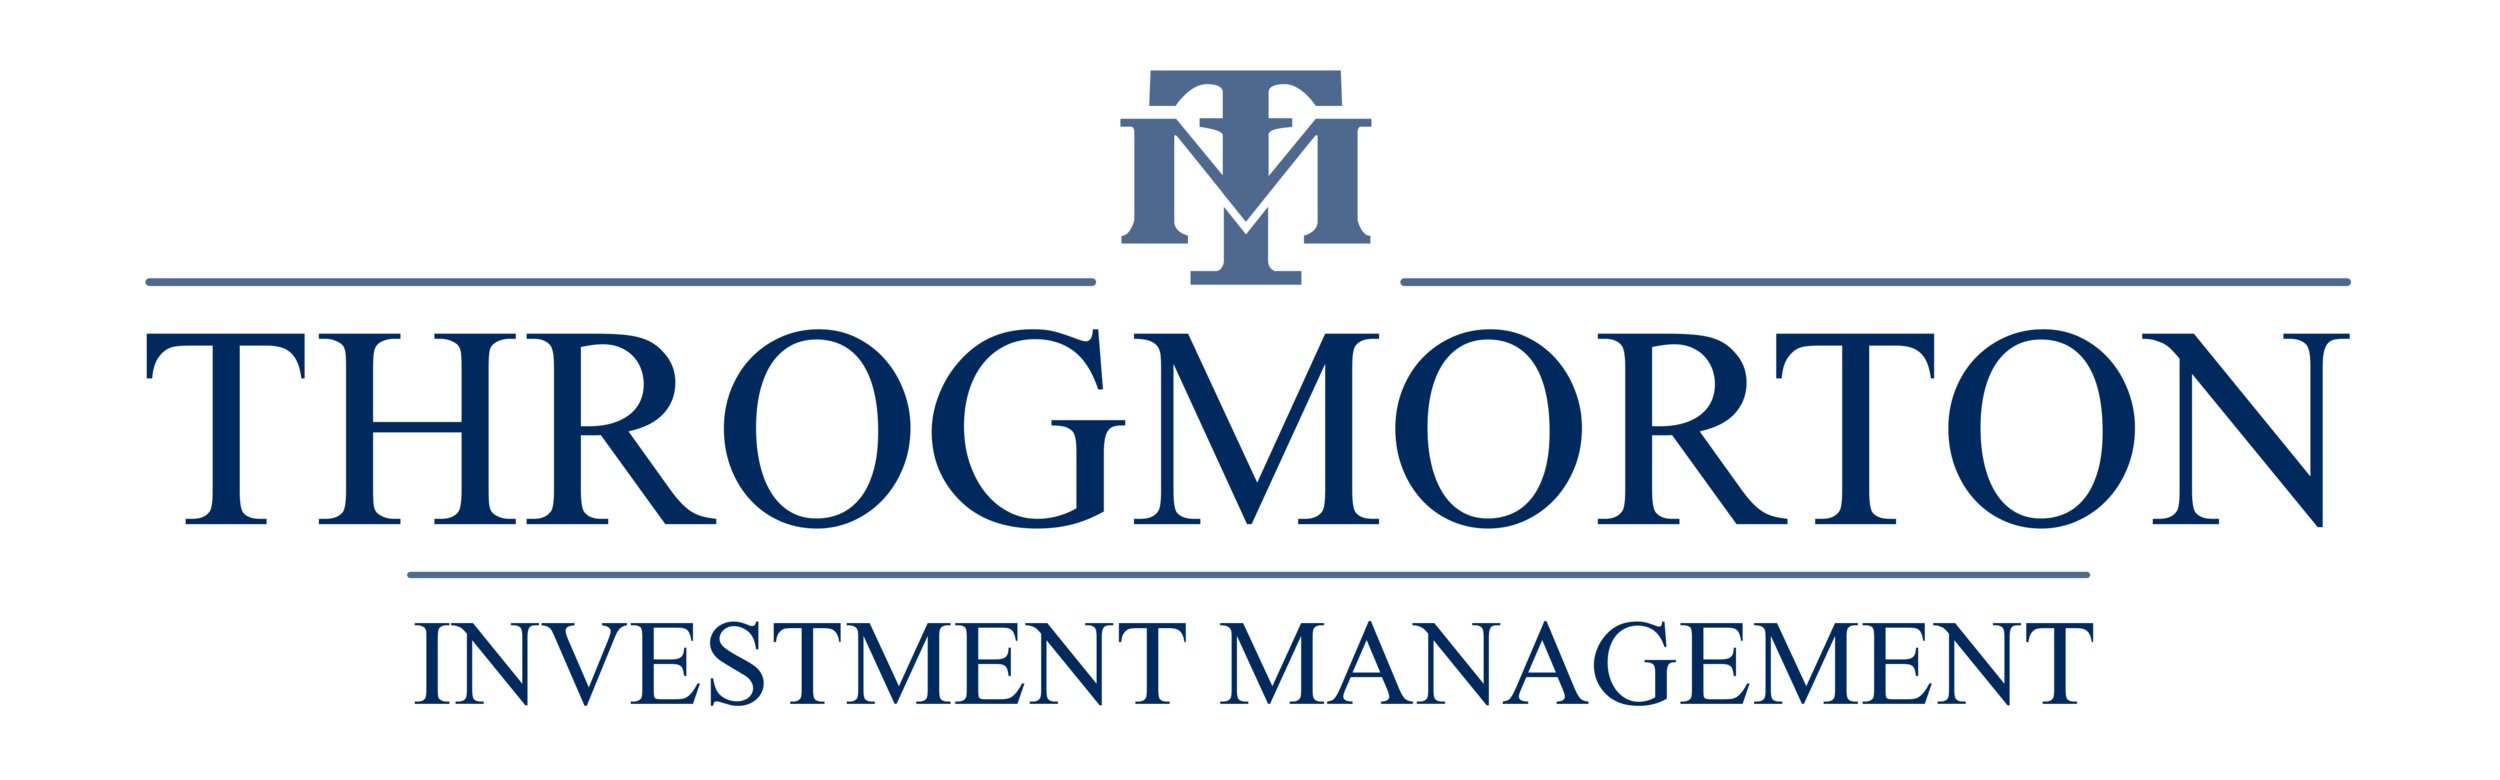 Throgmorton Investment Management Ltd